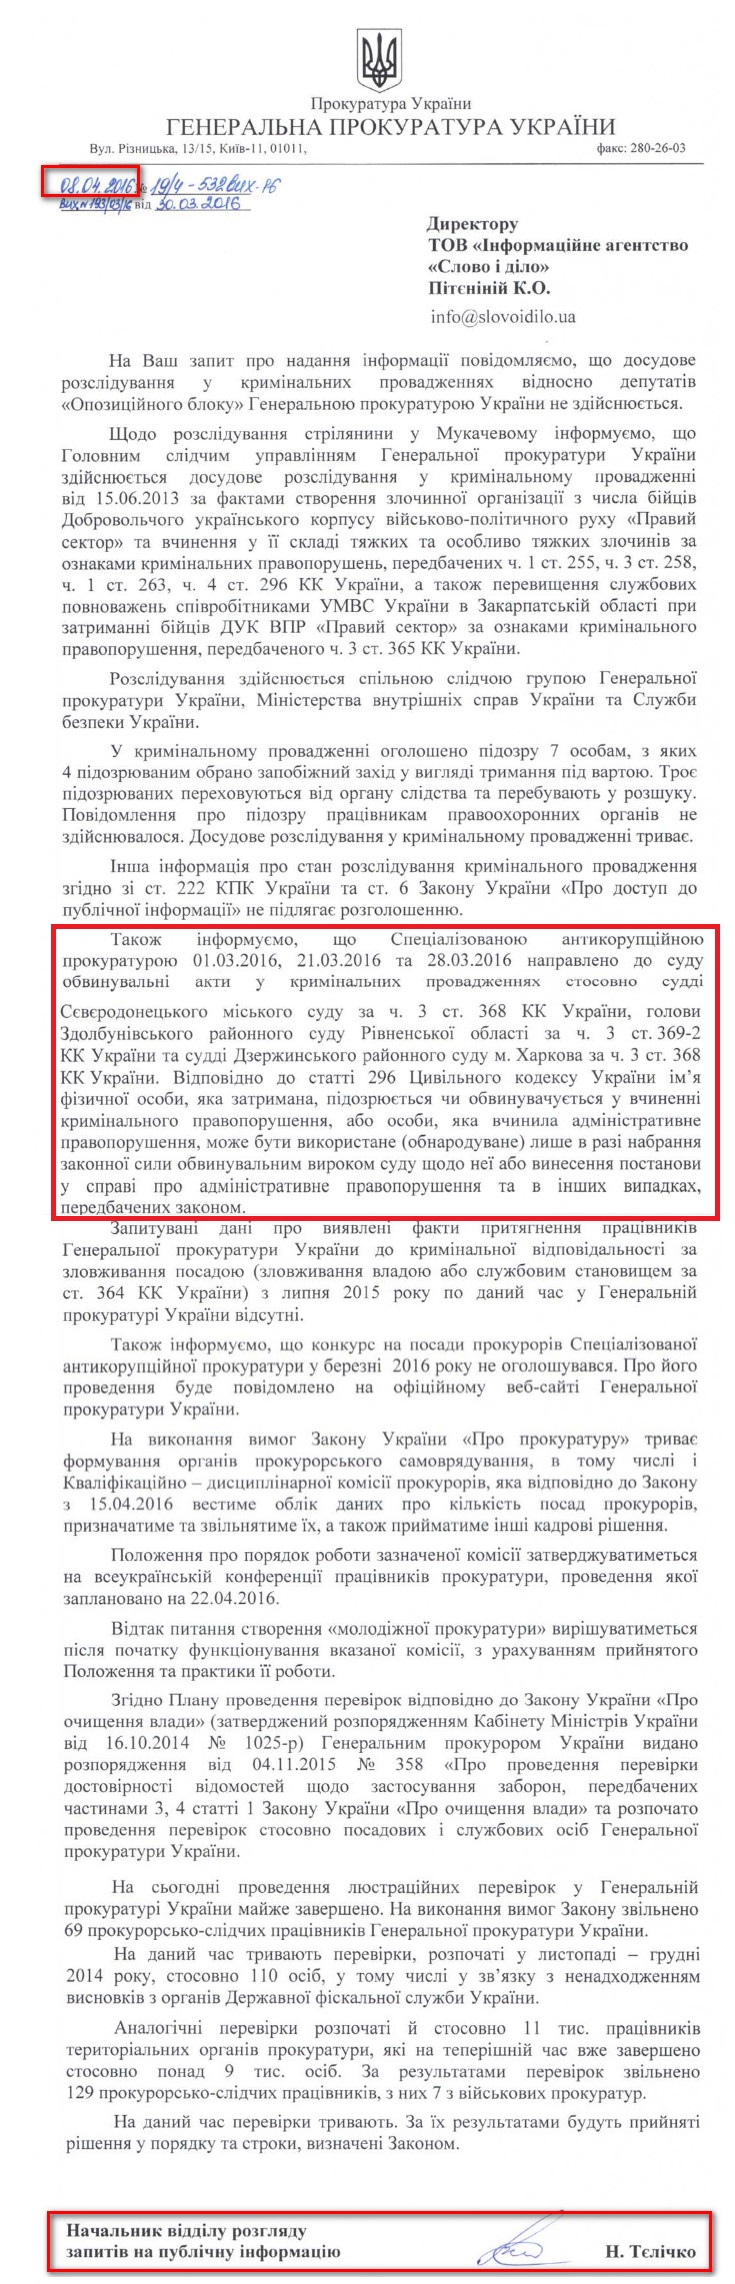 Лист начальника відділу розгляду запитів на публічну інформацію ГПУ Наталії Тєлічко від 8 квітня 2016 року